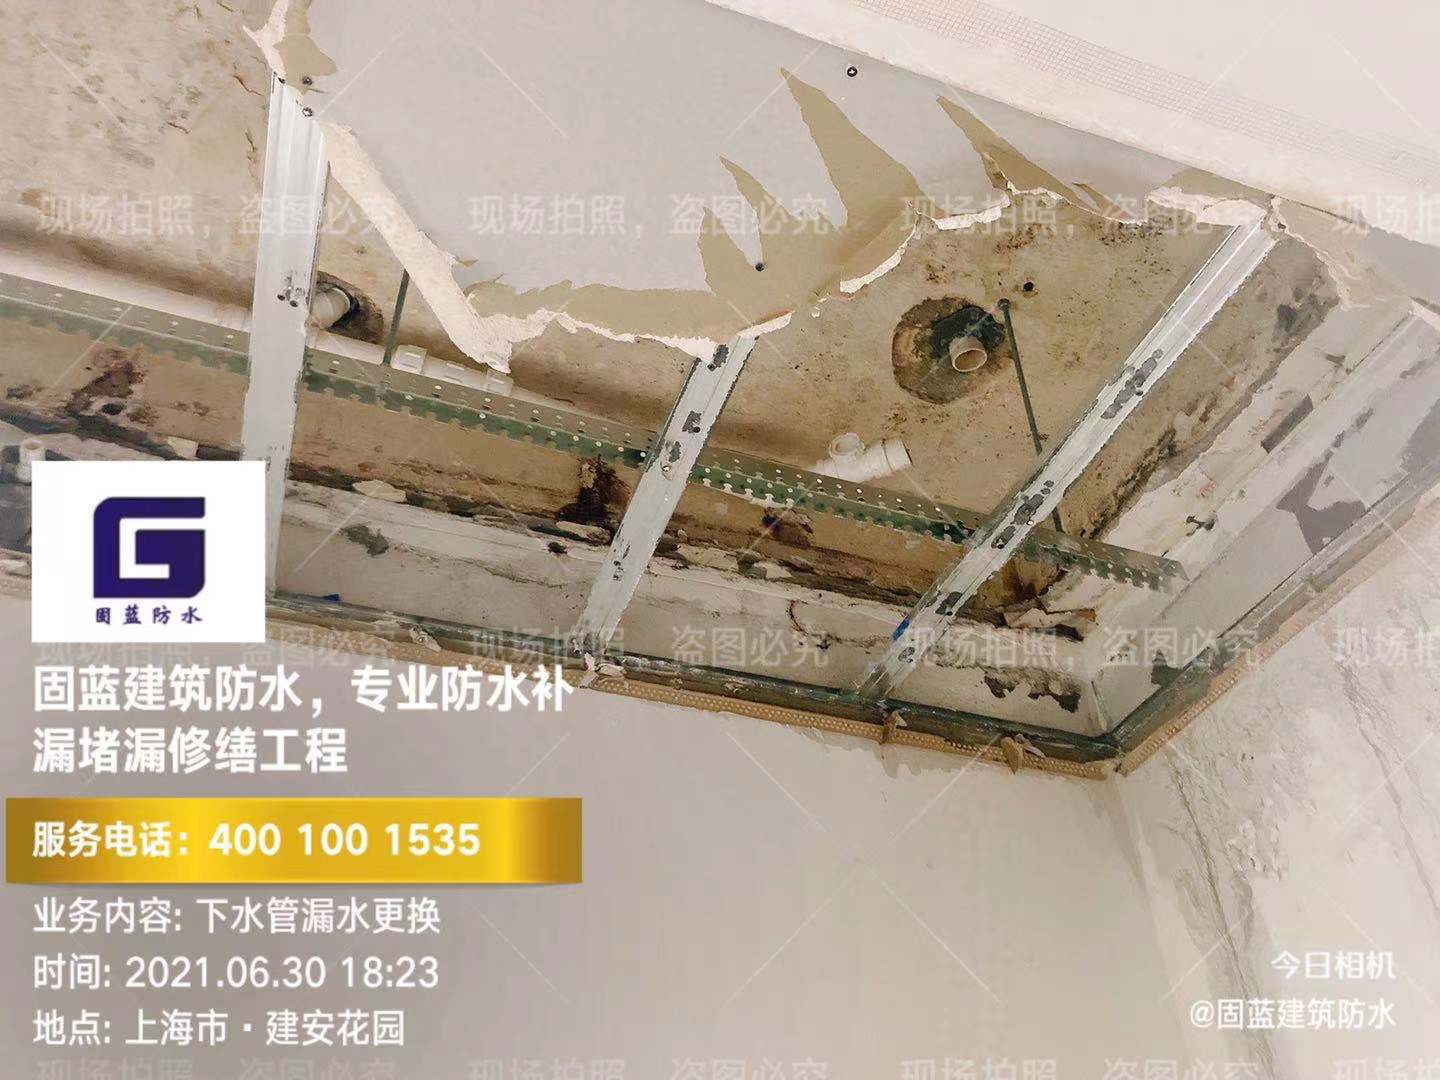 上海固蓝防水经验分享外墙渗漏水原因分析及治理方案